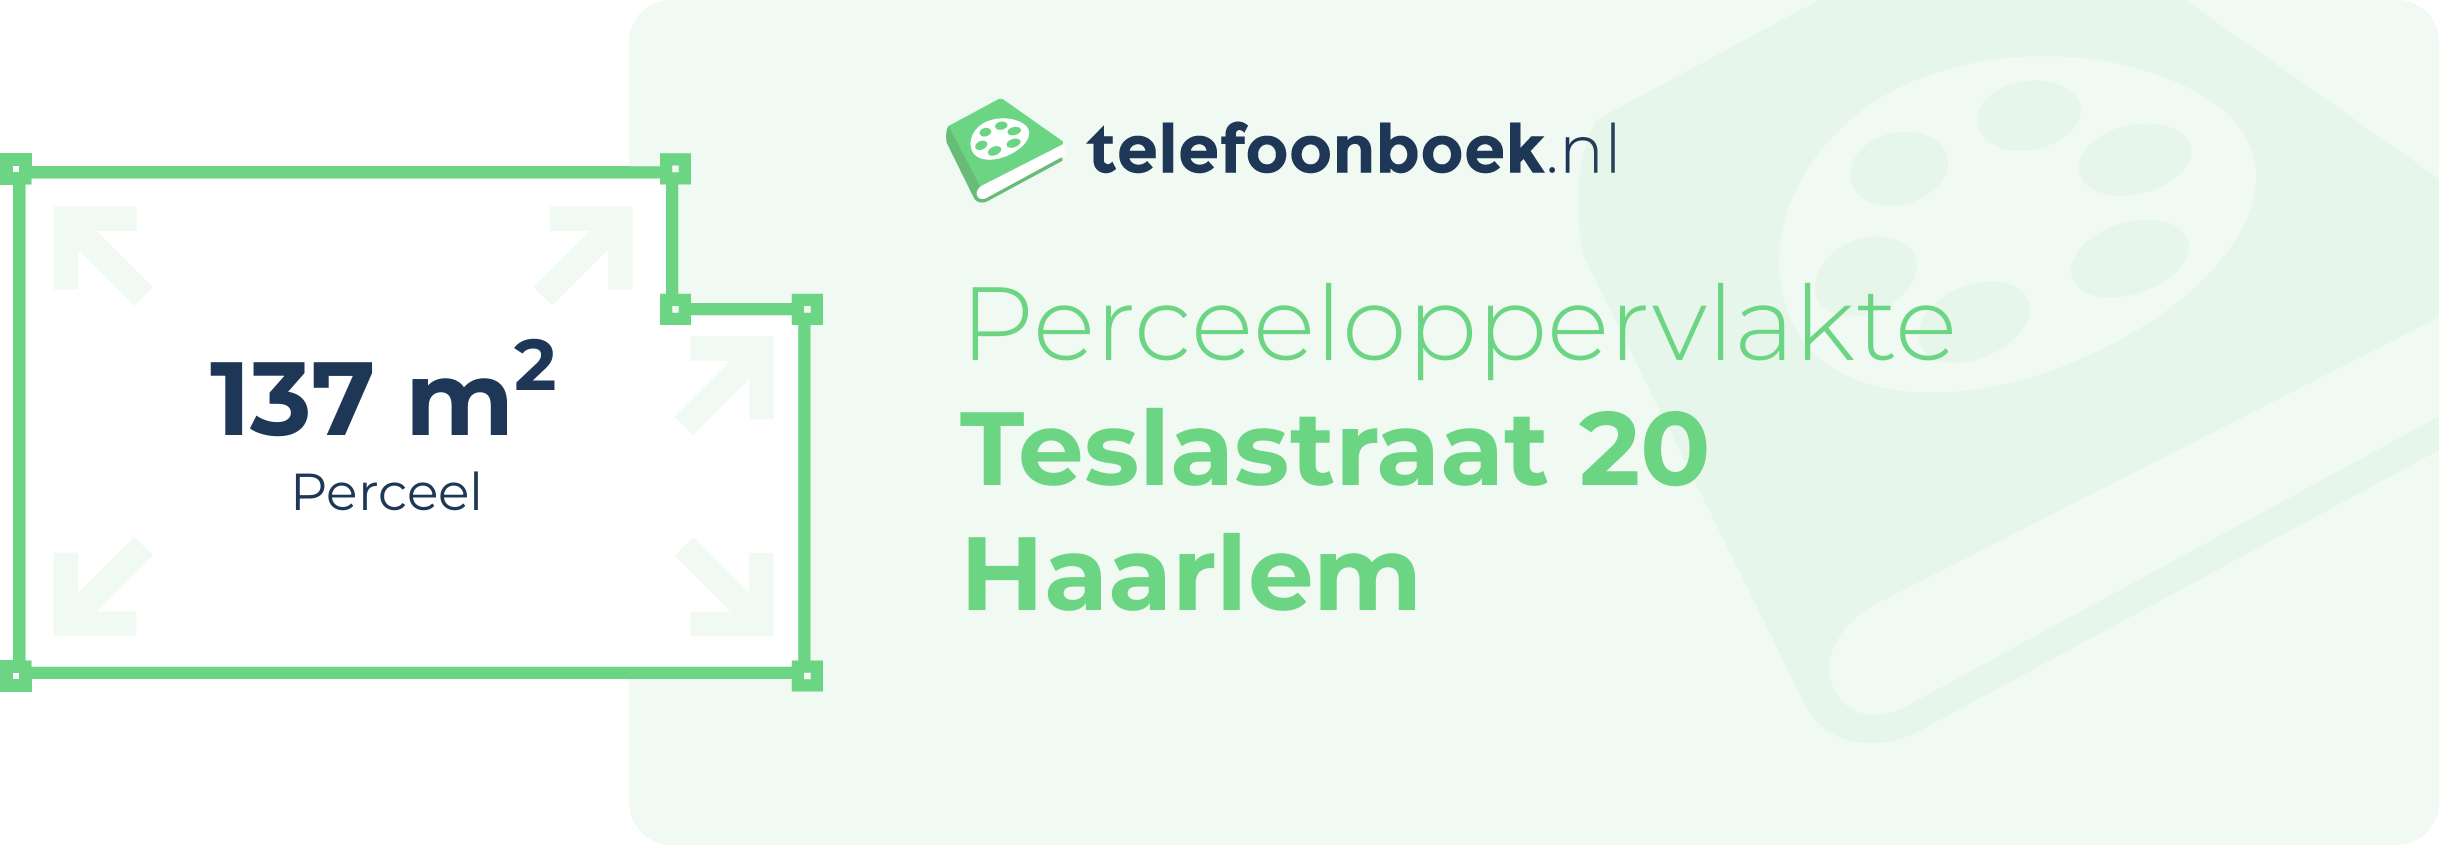 Perceeloppervlakte Teslastraat 20 Haarlem